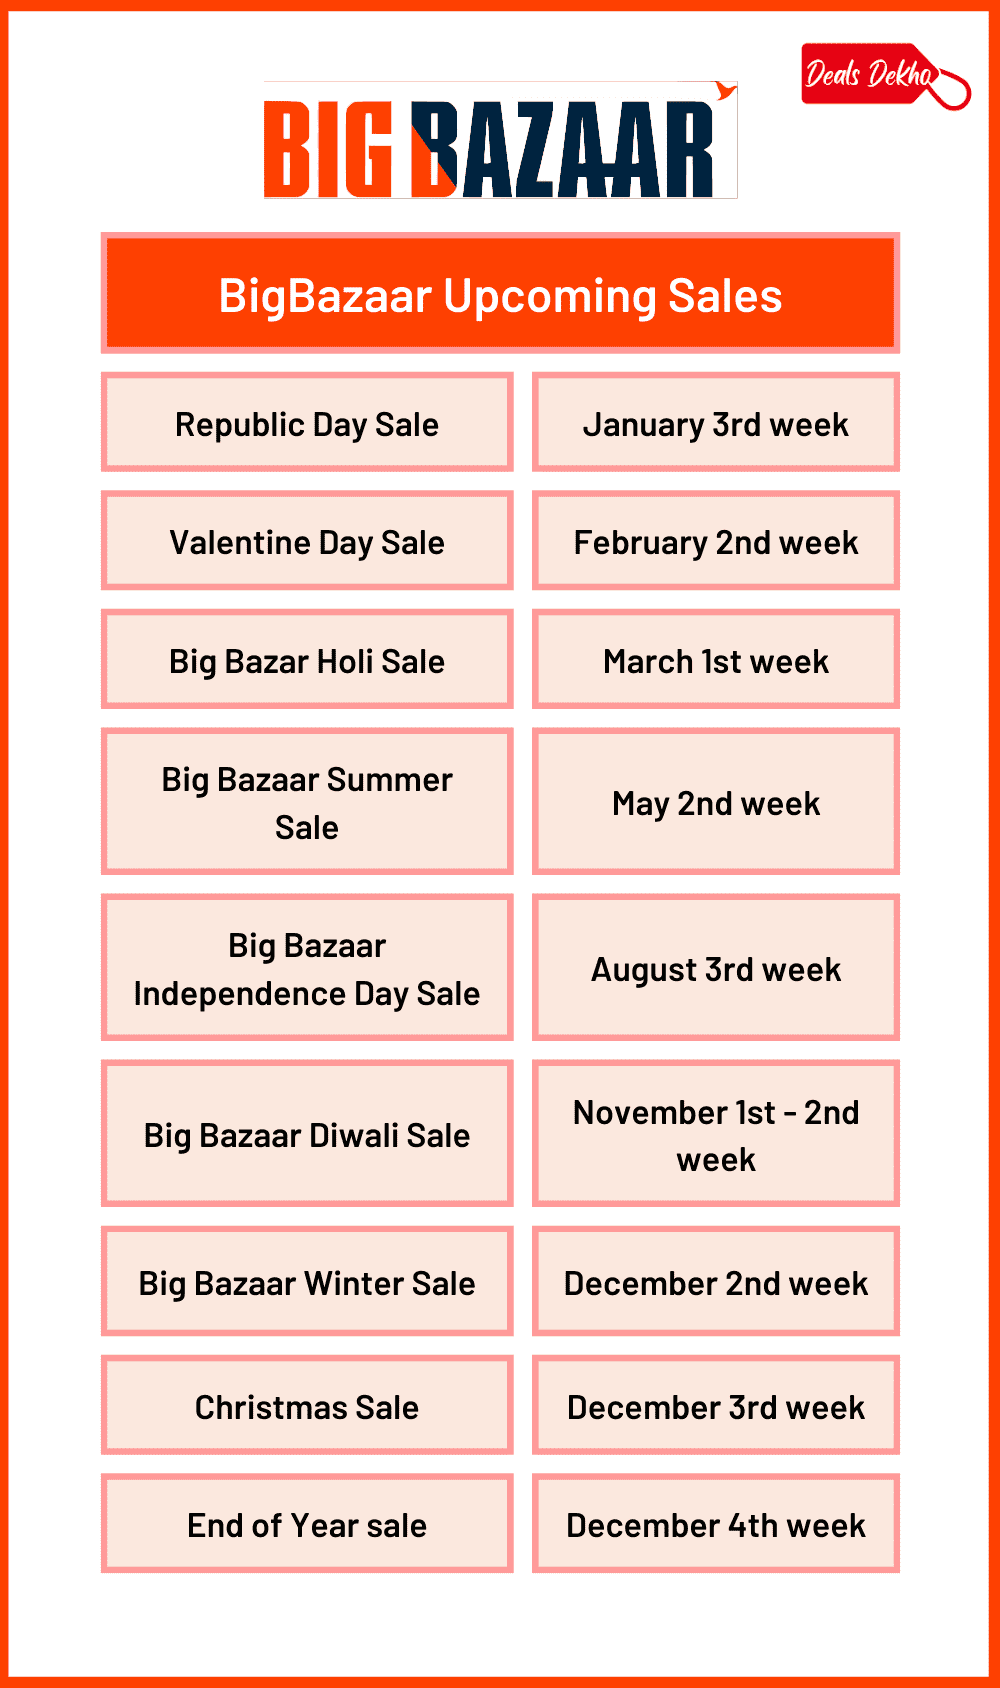 Big Bazaar Upcoming Sales